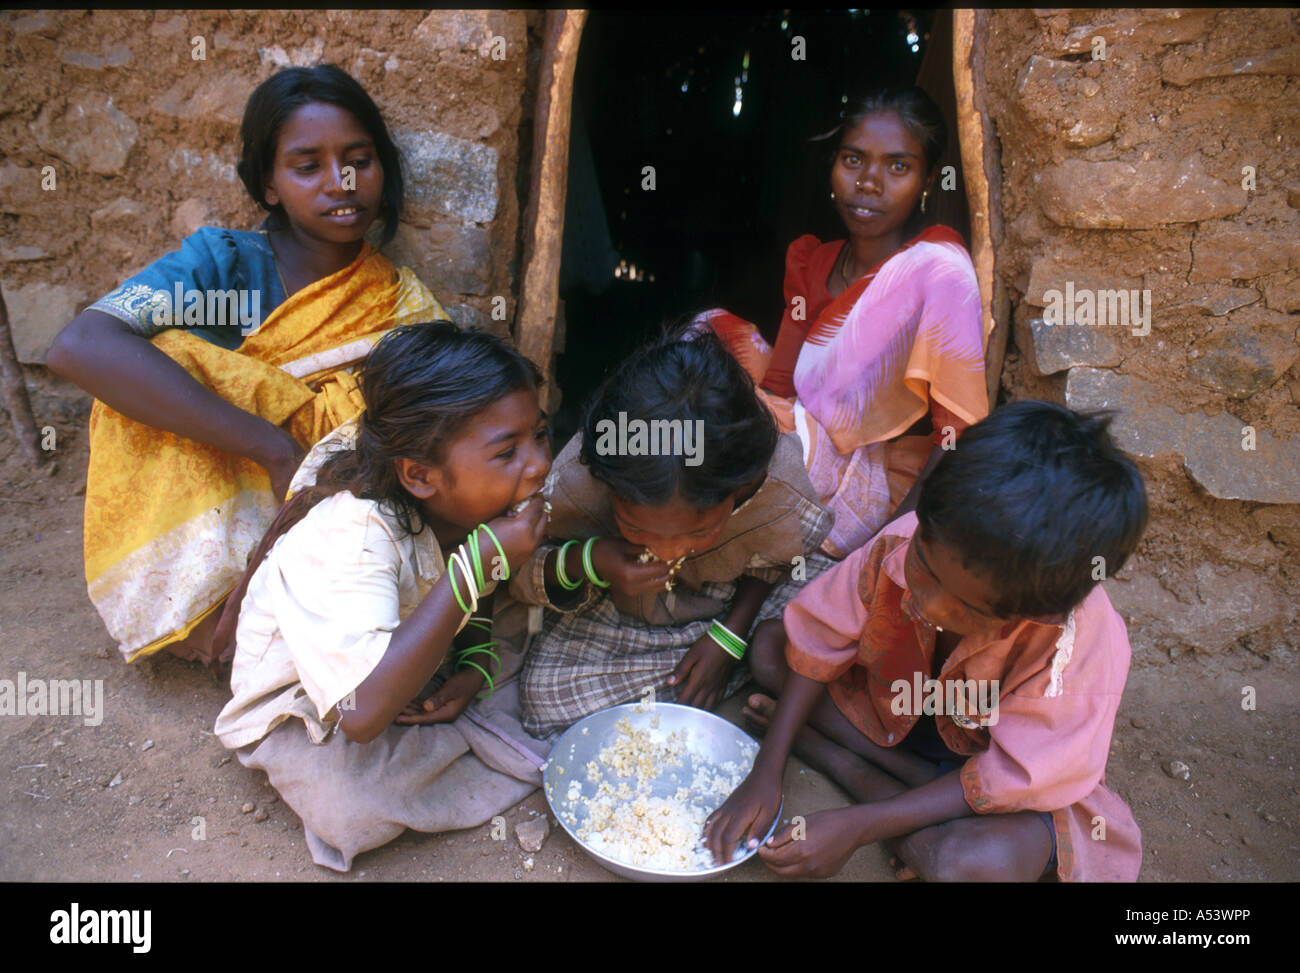 Painet ha2223 5009 india la schiavitù di bambini lavoratori coatti pasto mangiando il Tamil Nadu paese nazione in via di sviluppo dal punto di vista economico Foto Stock